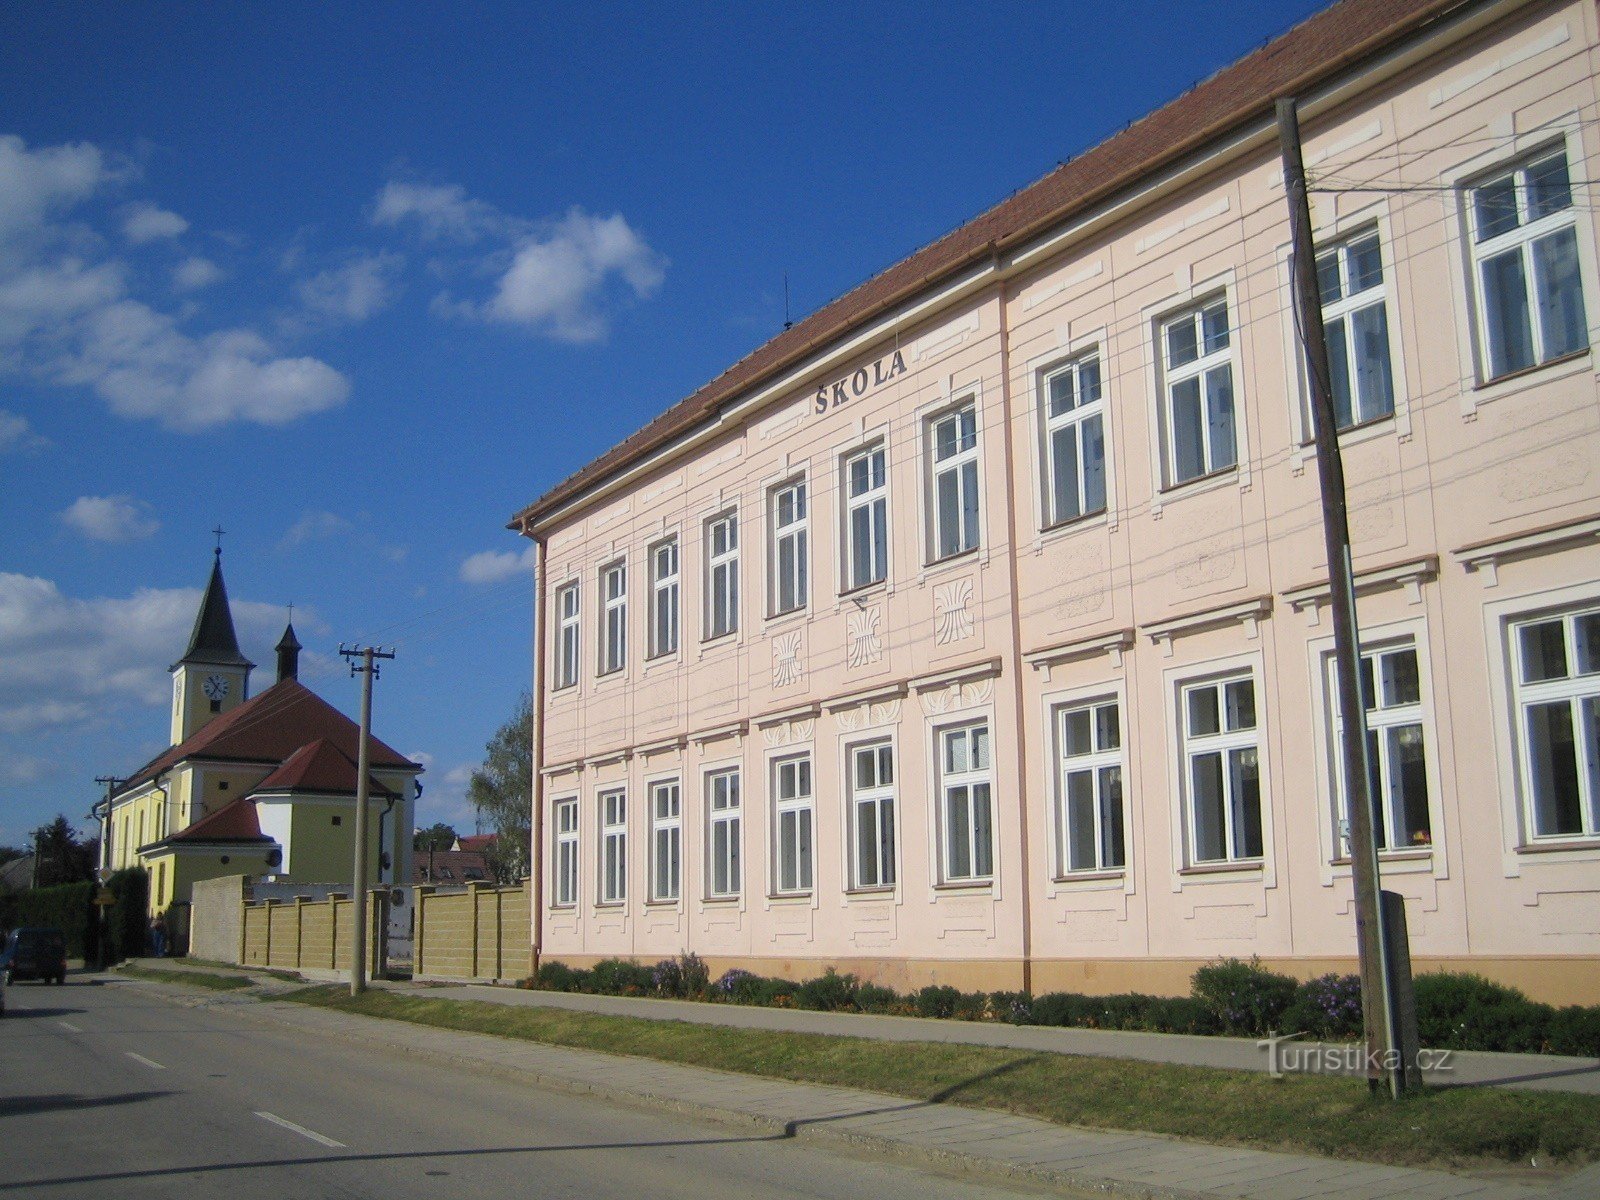 Topolná - skola och kyrka